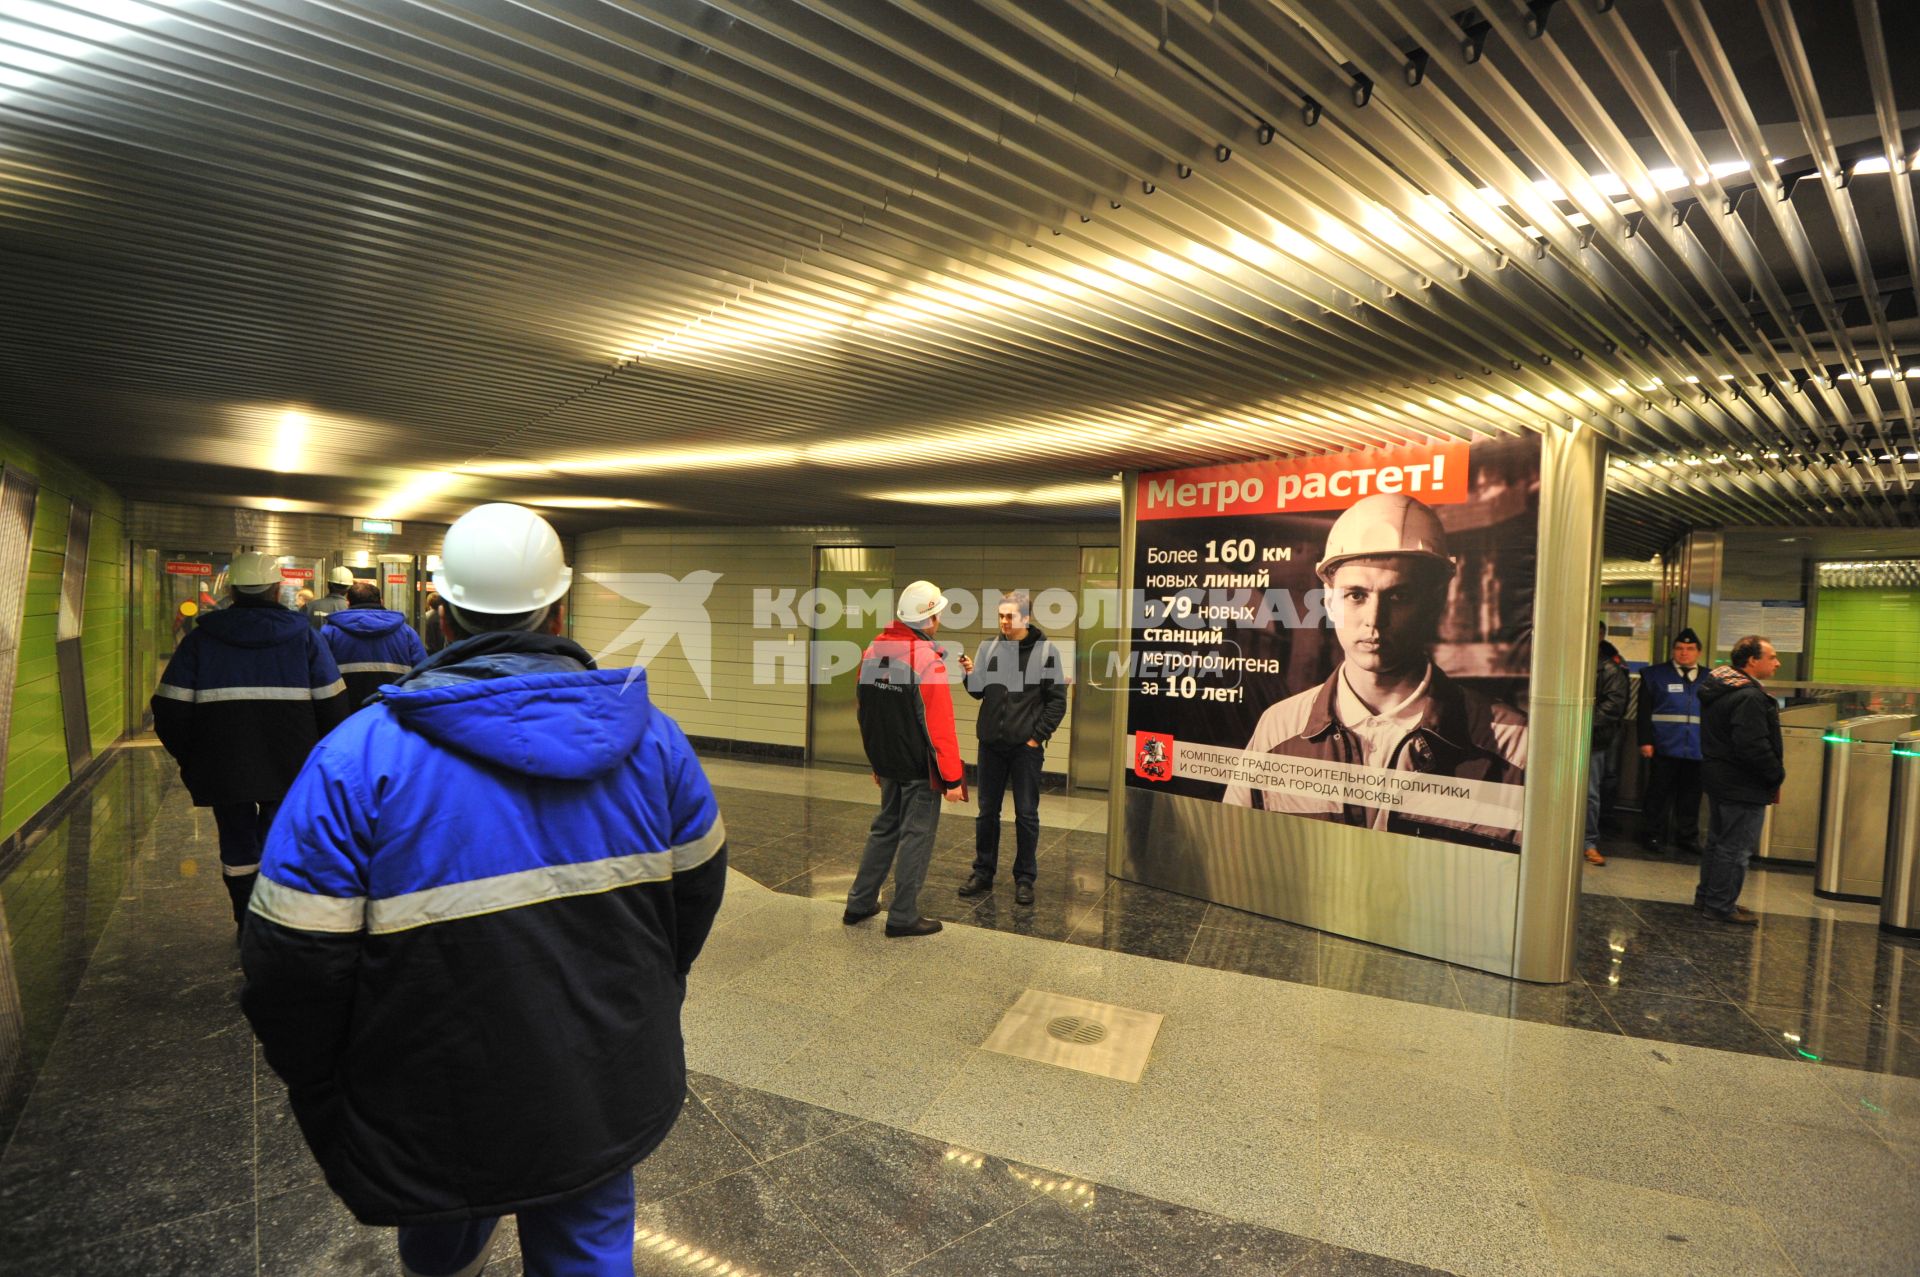 Открытие станции метро `Жулебино`. На снимке: рекламный плакат с надписью `Метро растет!`